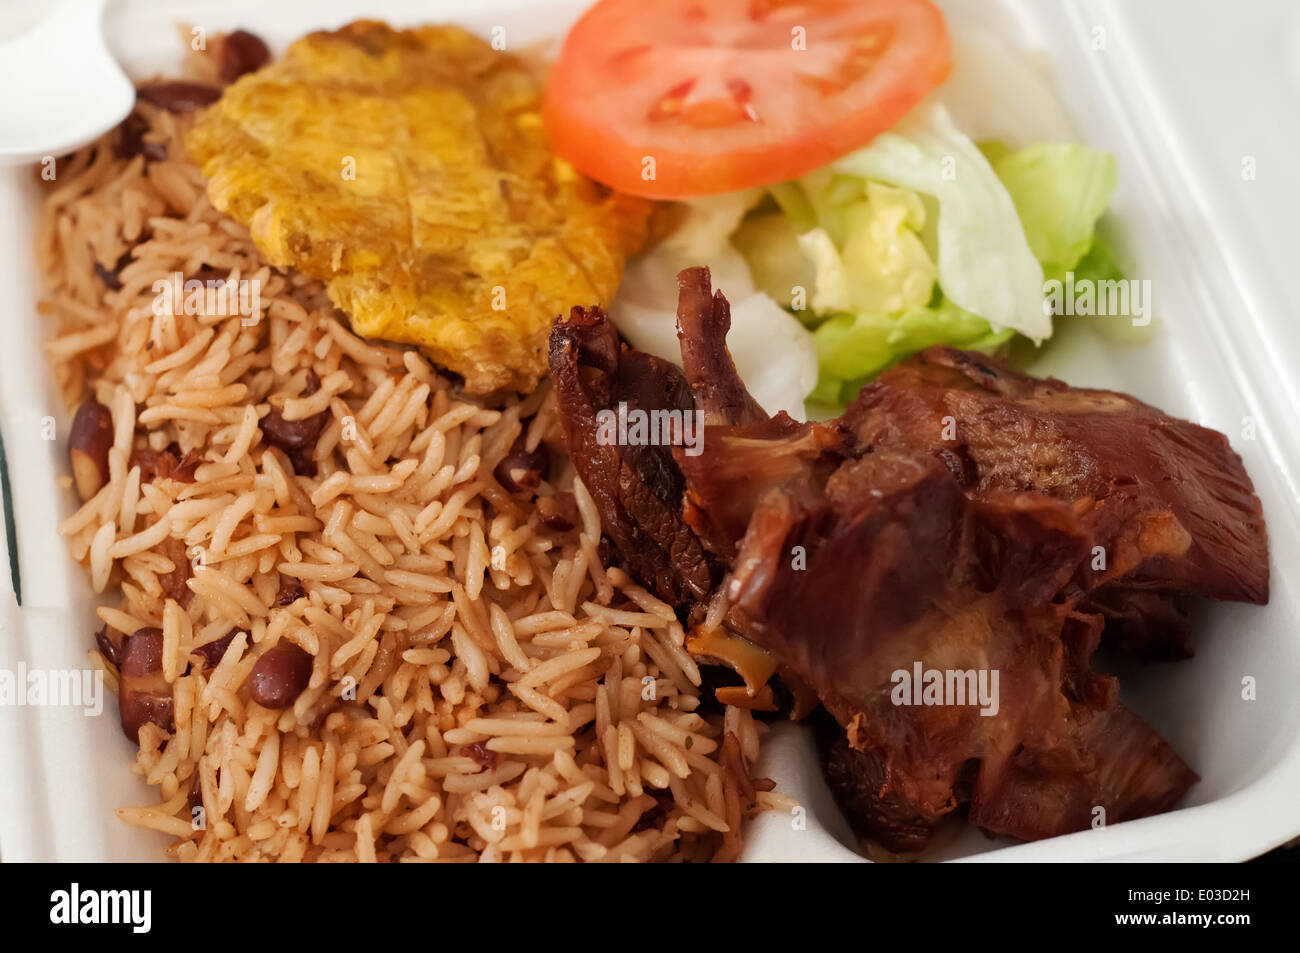 Haitian cuisine fotografías e imágenes de alta resolución - Alamy